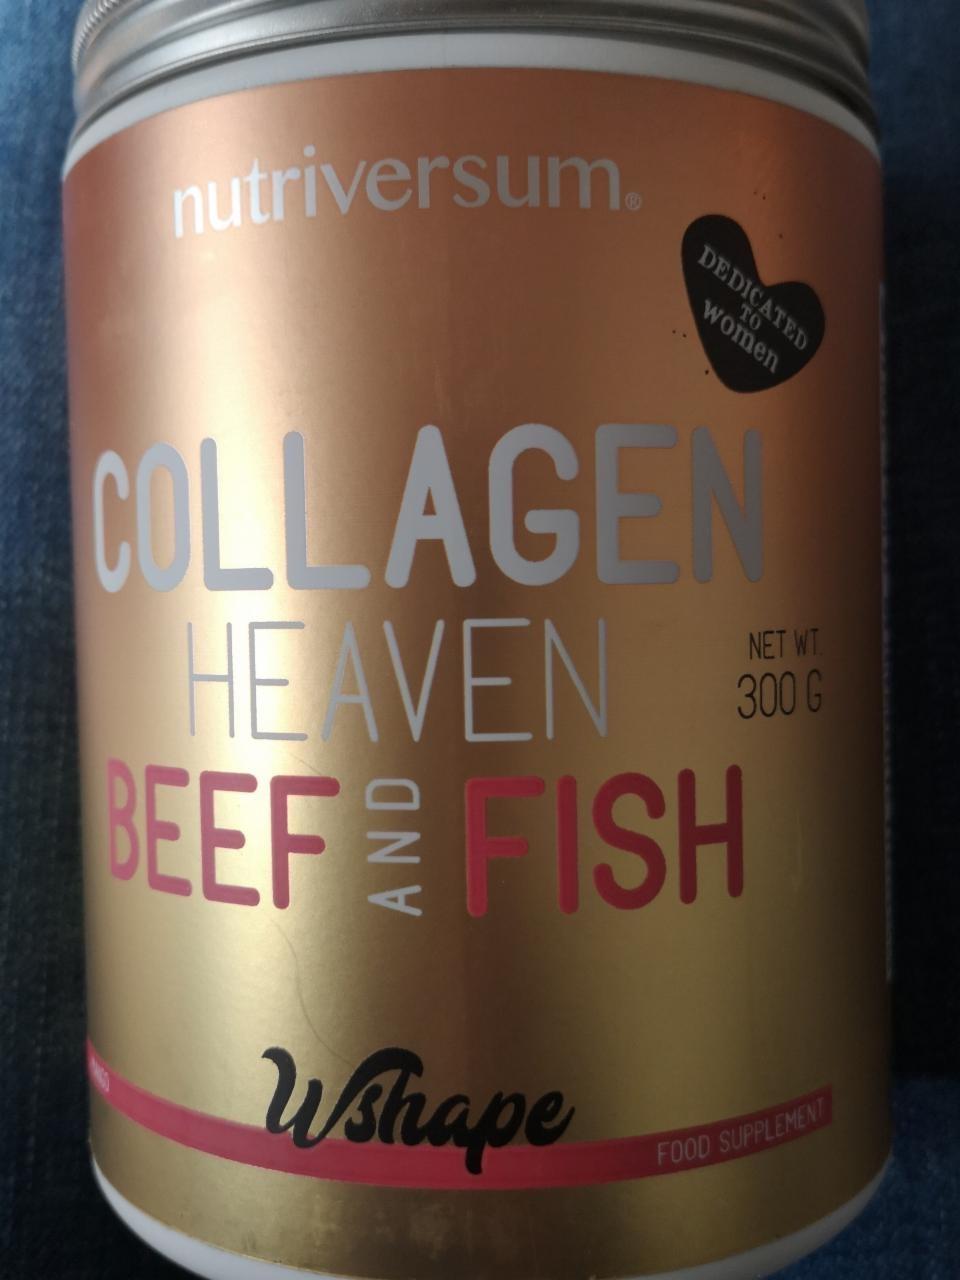 Képek - Collagen heaven beef and fish Nutriversum